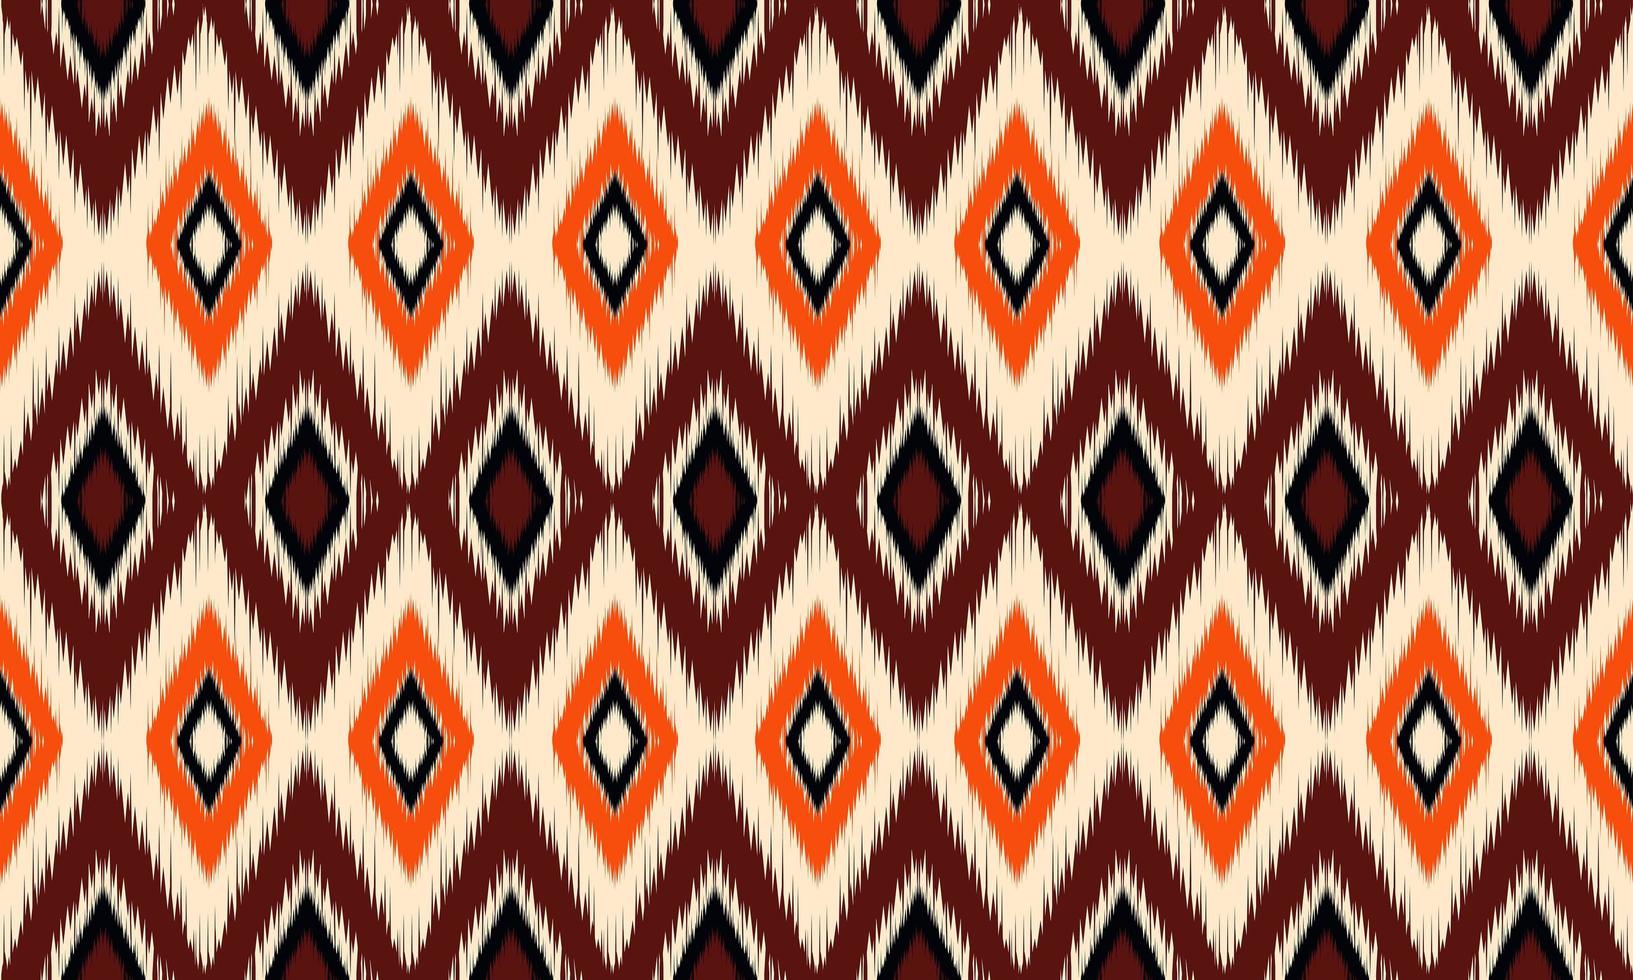 diseño tradicional del patrón de ikat oriental étnico geométrico para el fondo, alfombra, papel tapiz, ropa, envoltura, batik, tela, estilo de bordado de ilustración vectorial. vector